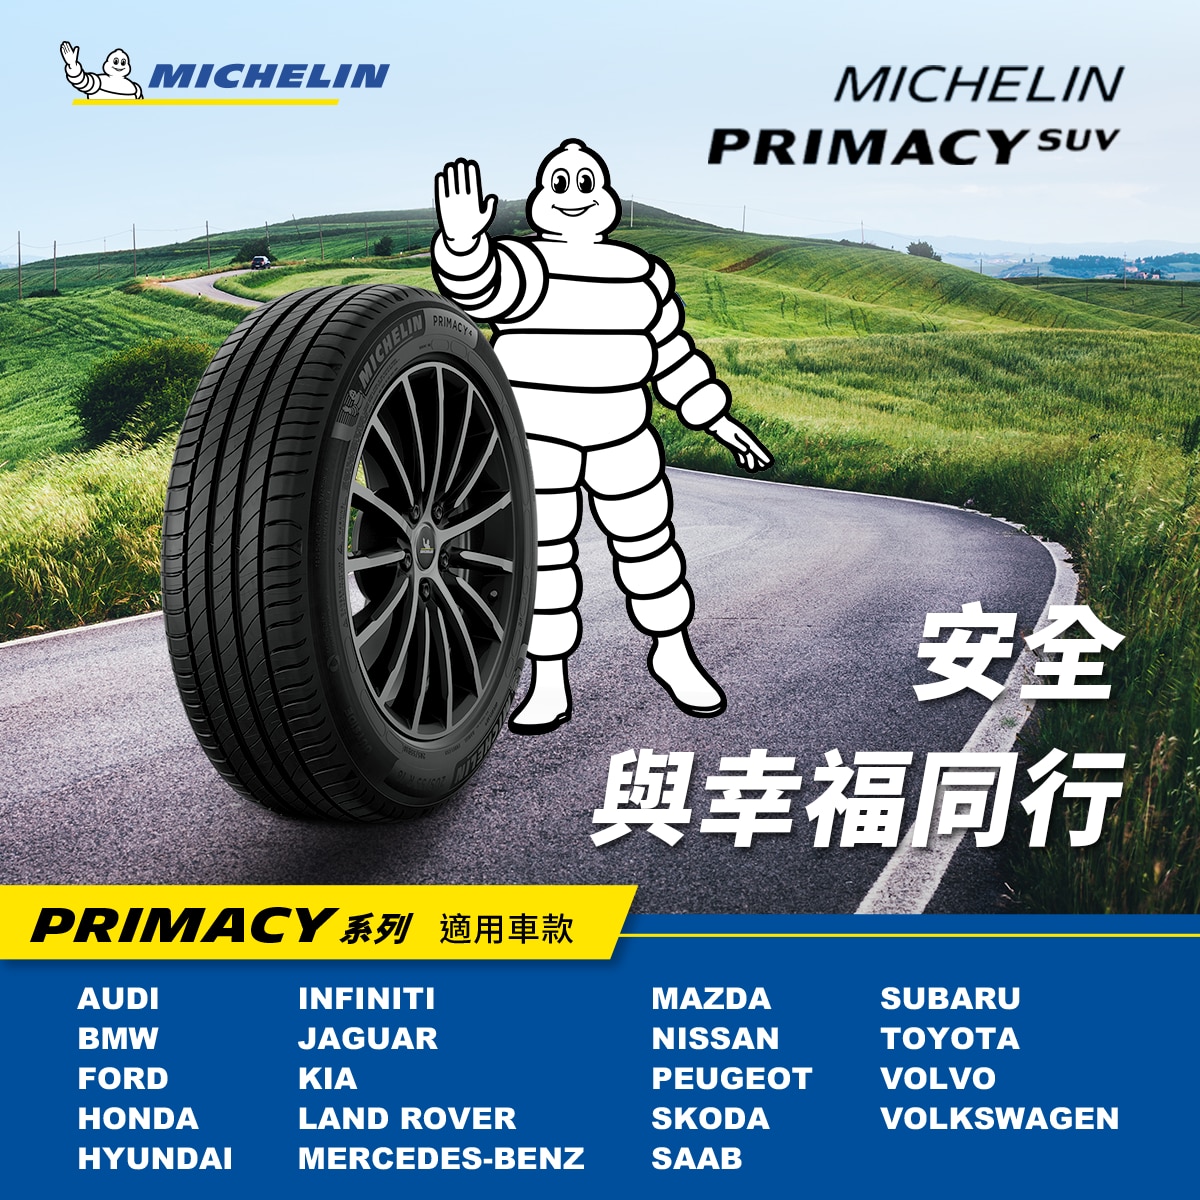 Michelin 米其林輪胎，PRIMACY SUV，全面提升輪胎穩定性及剛性，乾濕地煞車距離更短，獨特的胎間花紋設計，有效過濾輪胎噪音，擁有更寧靜舒適的駕駛體驗。